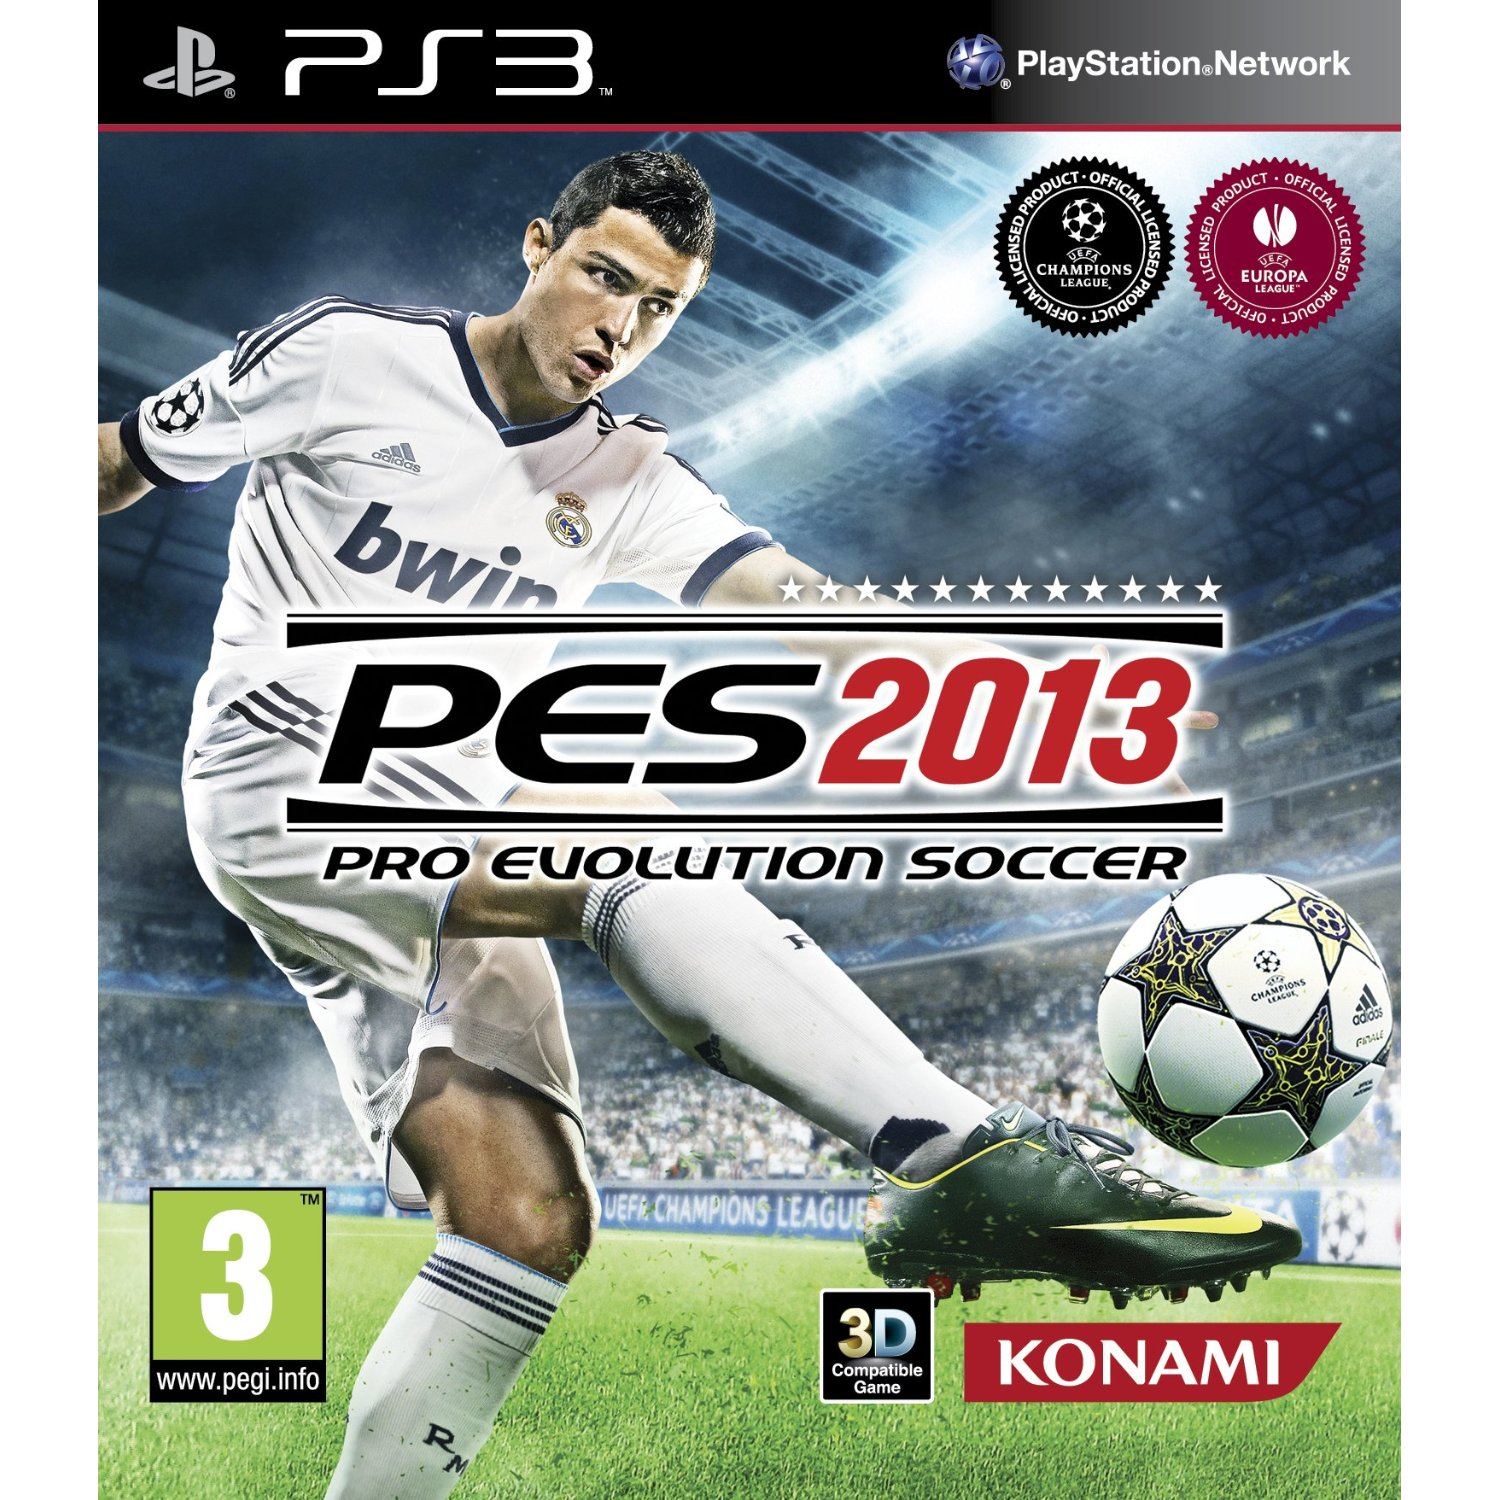 Игр футбол 2013. PES 2013 ps3. Pro Evolution Soccer 2013 Konami. PLAYSTATION 3 игры PES 2013. PES 2013 игра ps3 русская версия.